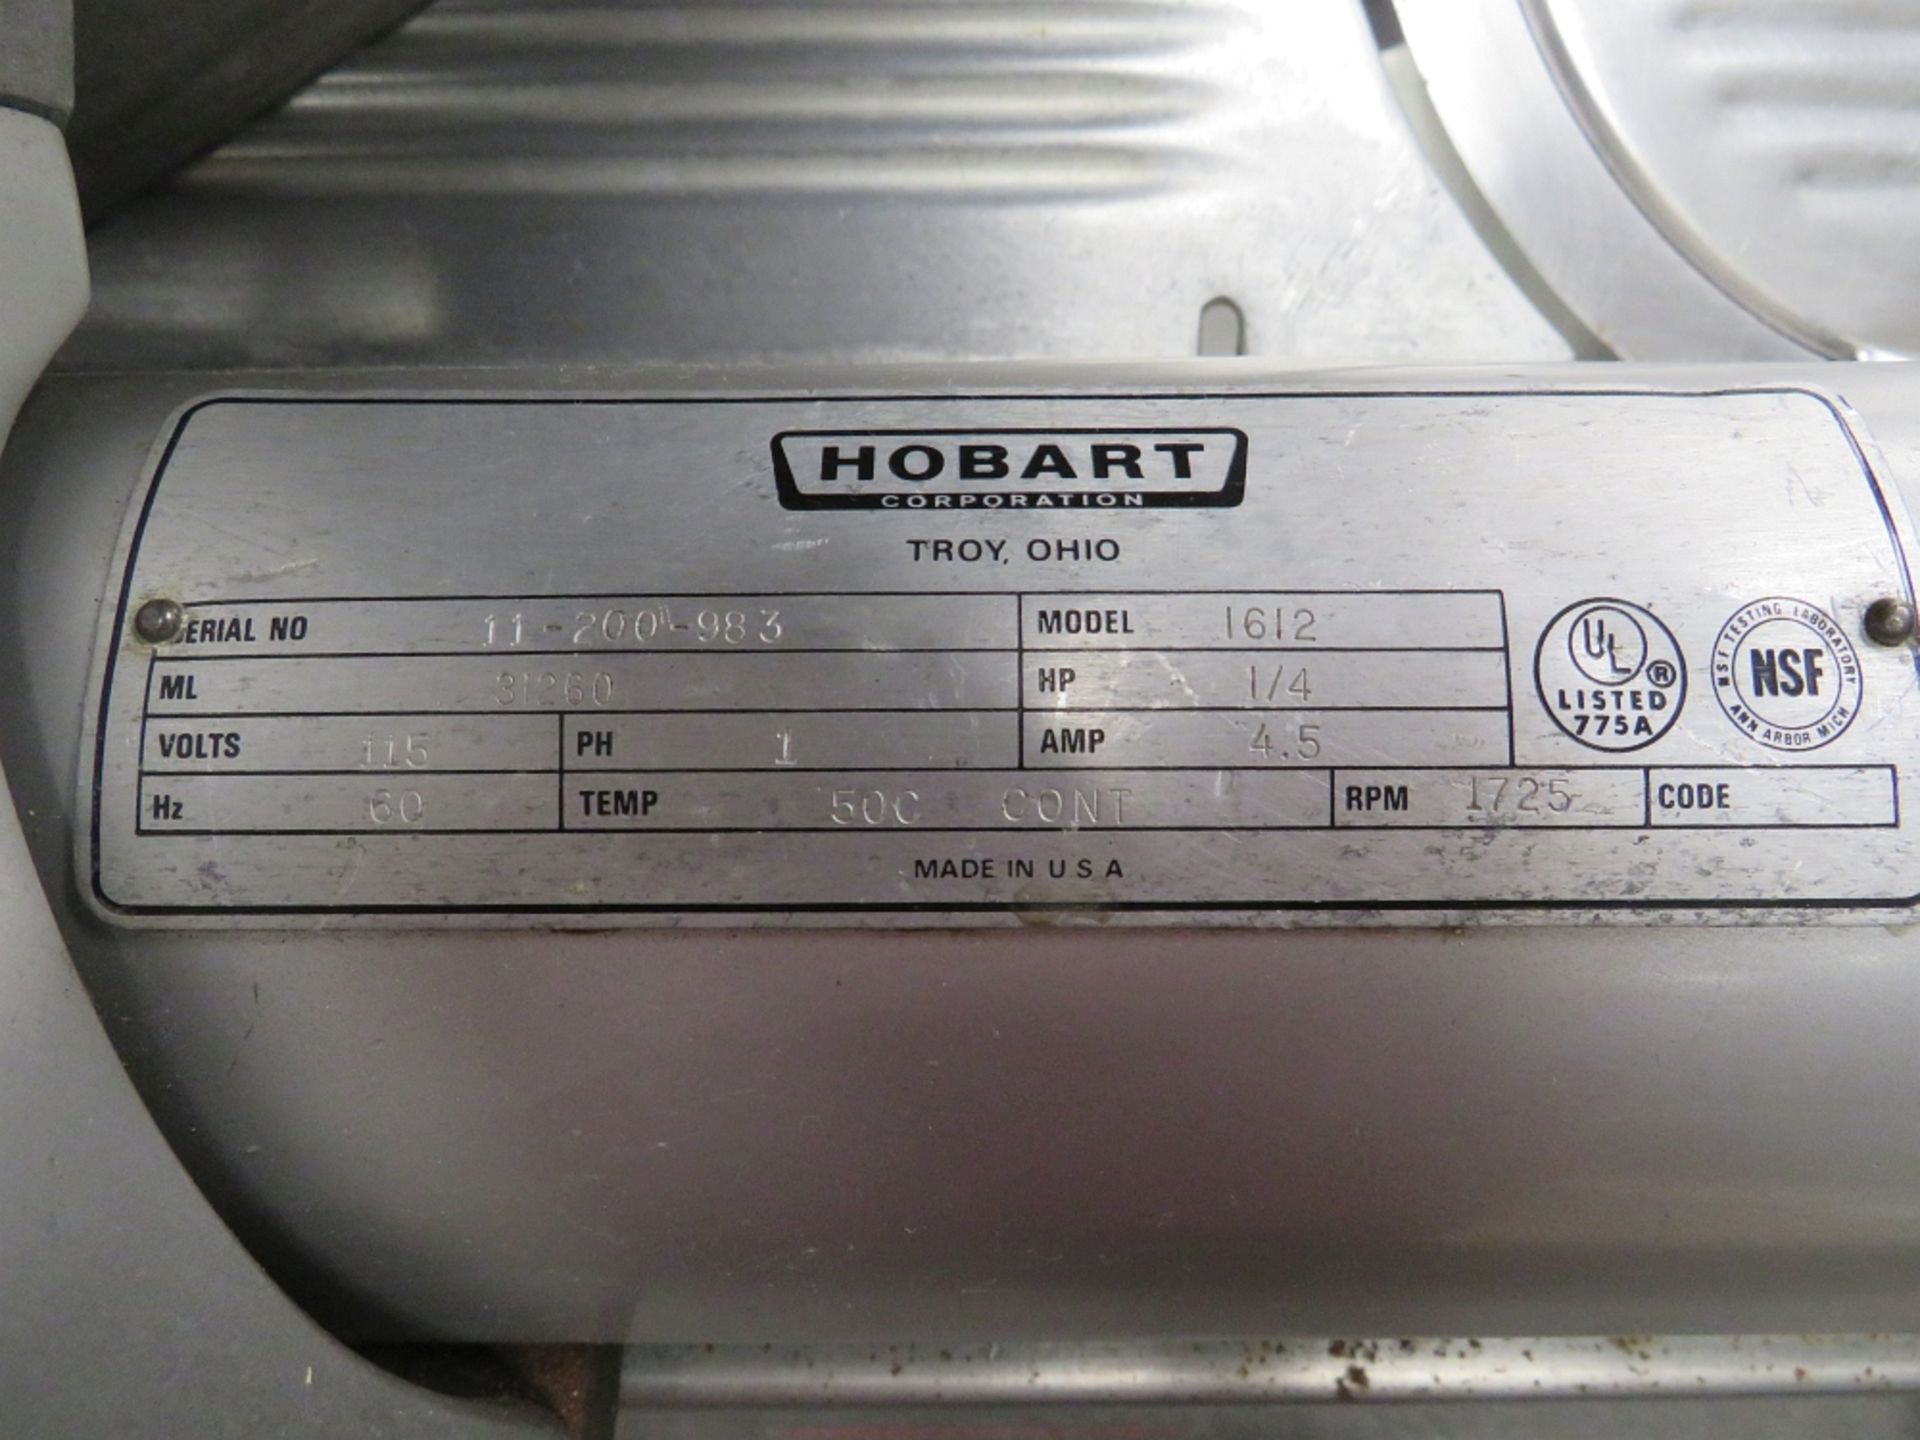 HOBART MEAT SLICER MDL 1612, SN 11-200-983, 1/4 HP, 115 V, SINGLE PHASE - Image 3 of 3